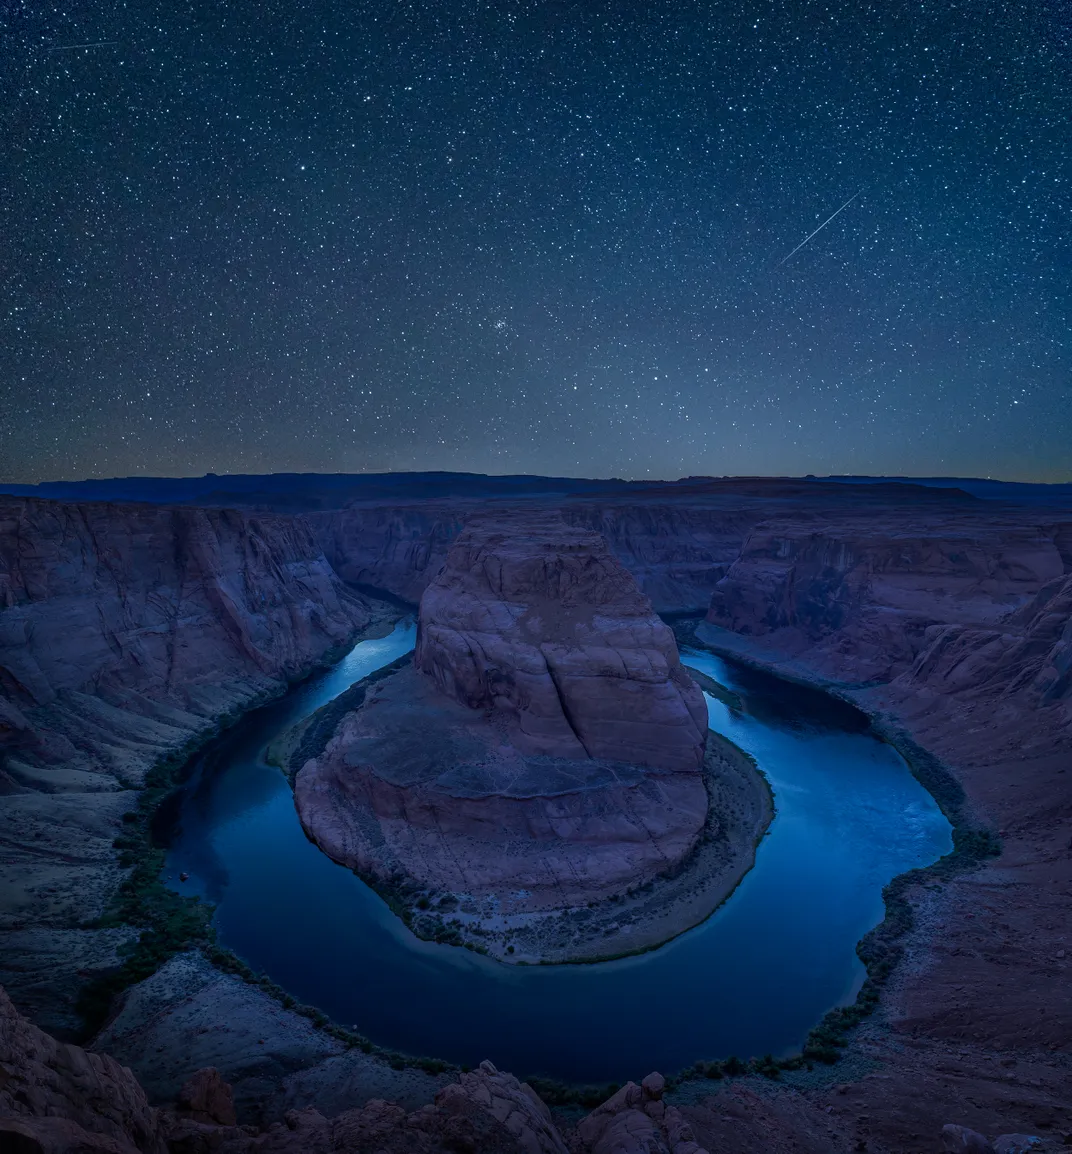 Ein sternenklarer Nachthimmel reflektiert das Licht im seichten Wasser von Horseshoe Bend im Glen Canyon National Recreation Area